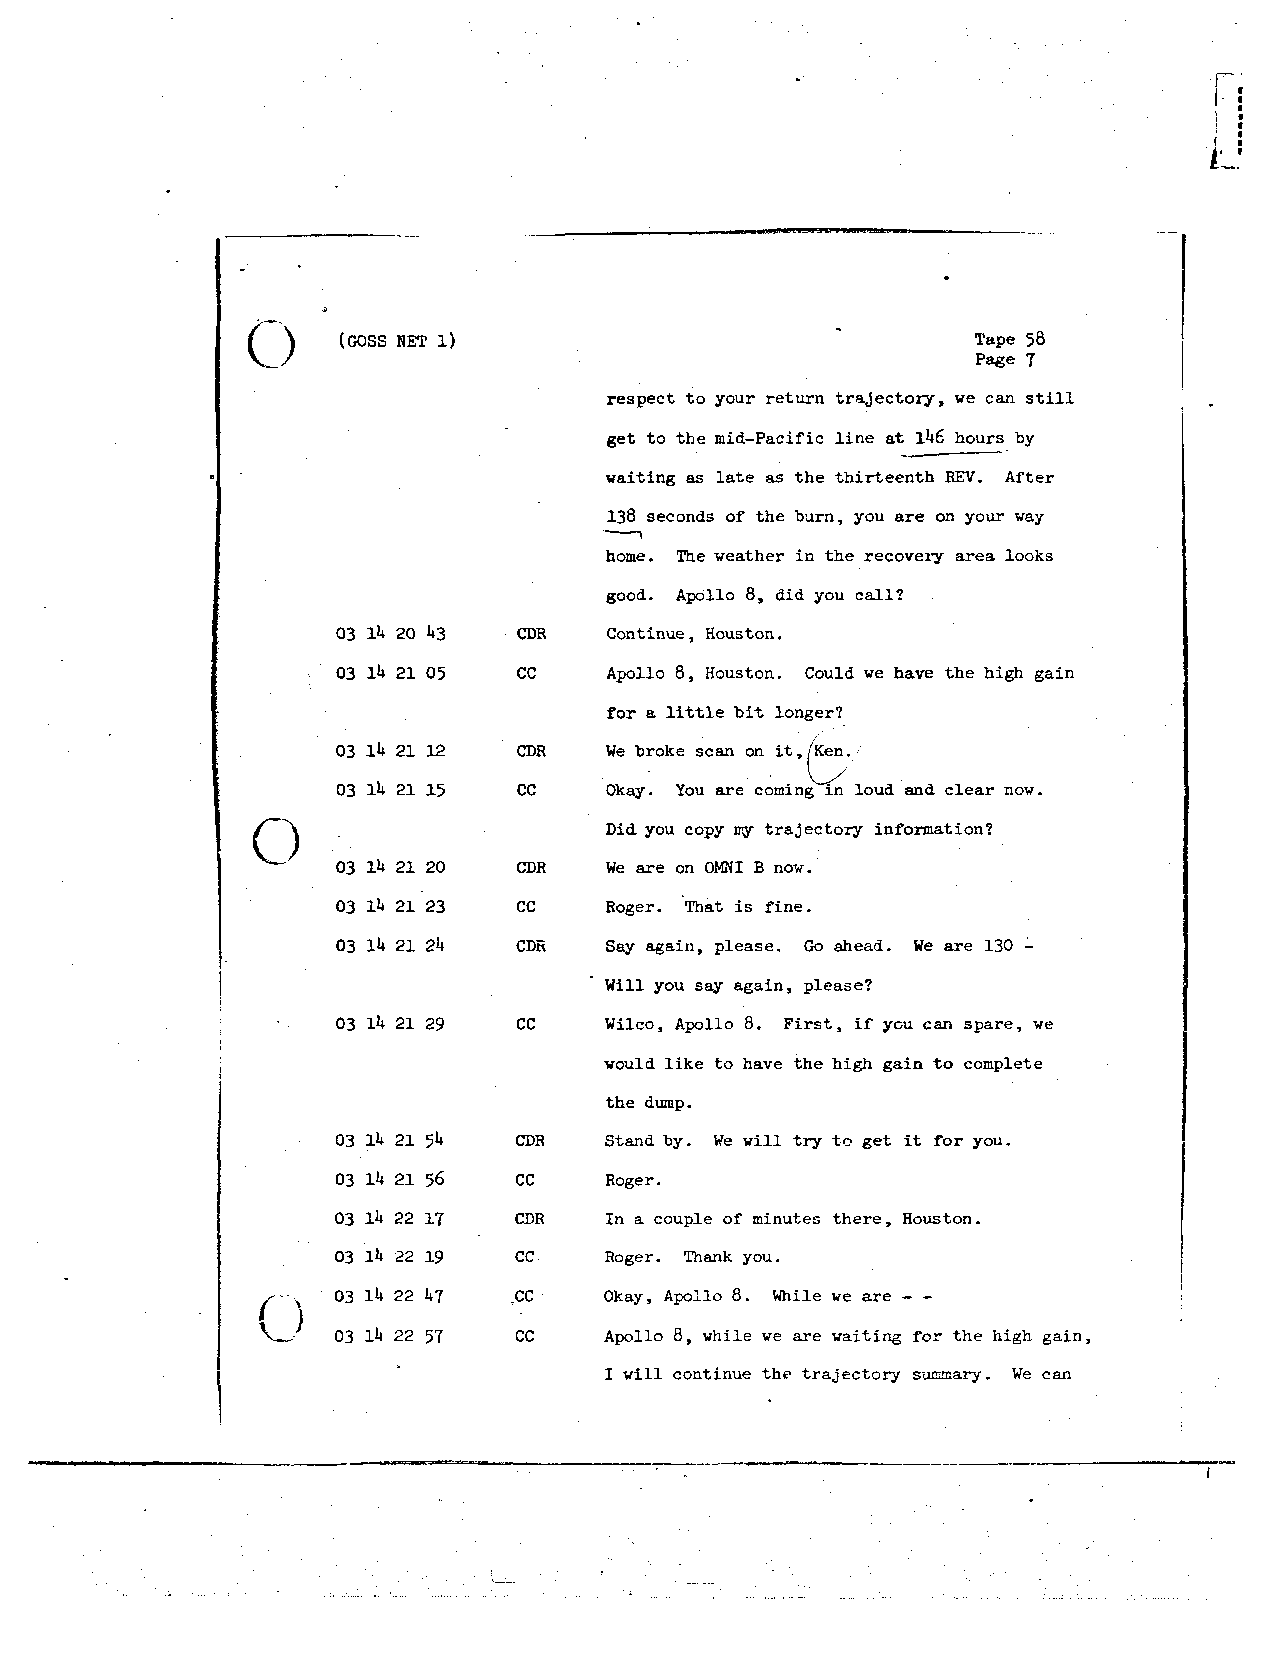 Page 466 of Apollo 8’s original transcript